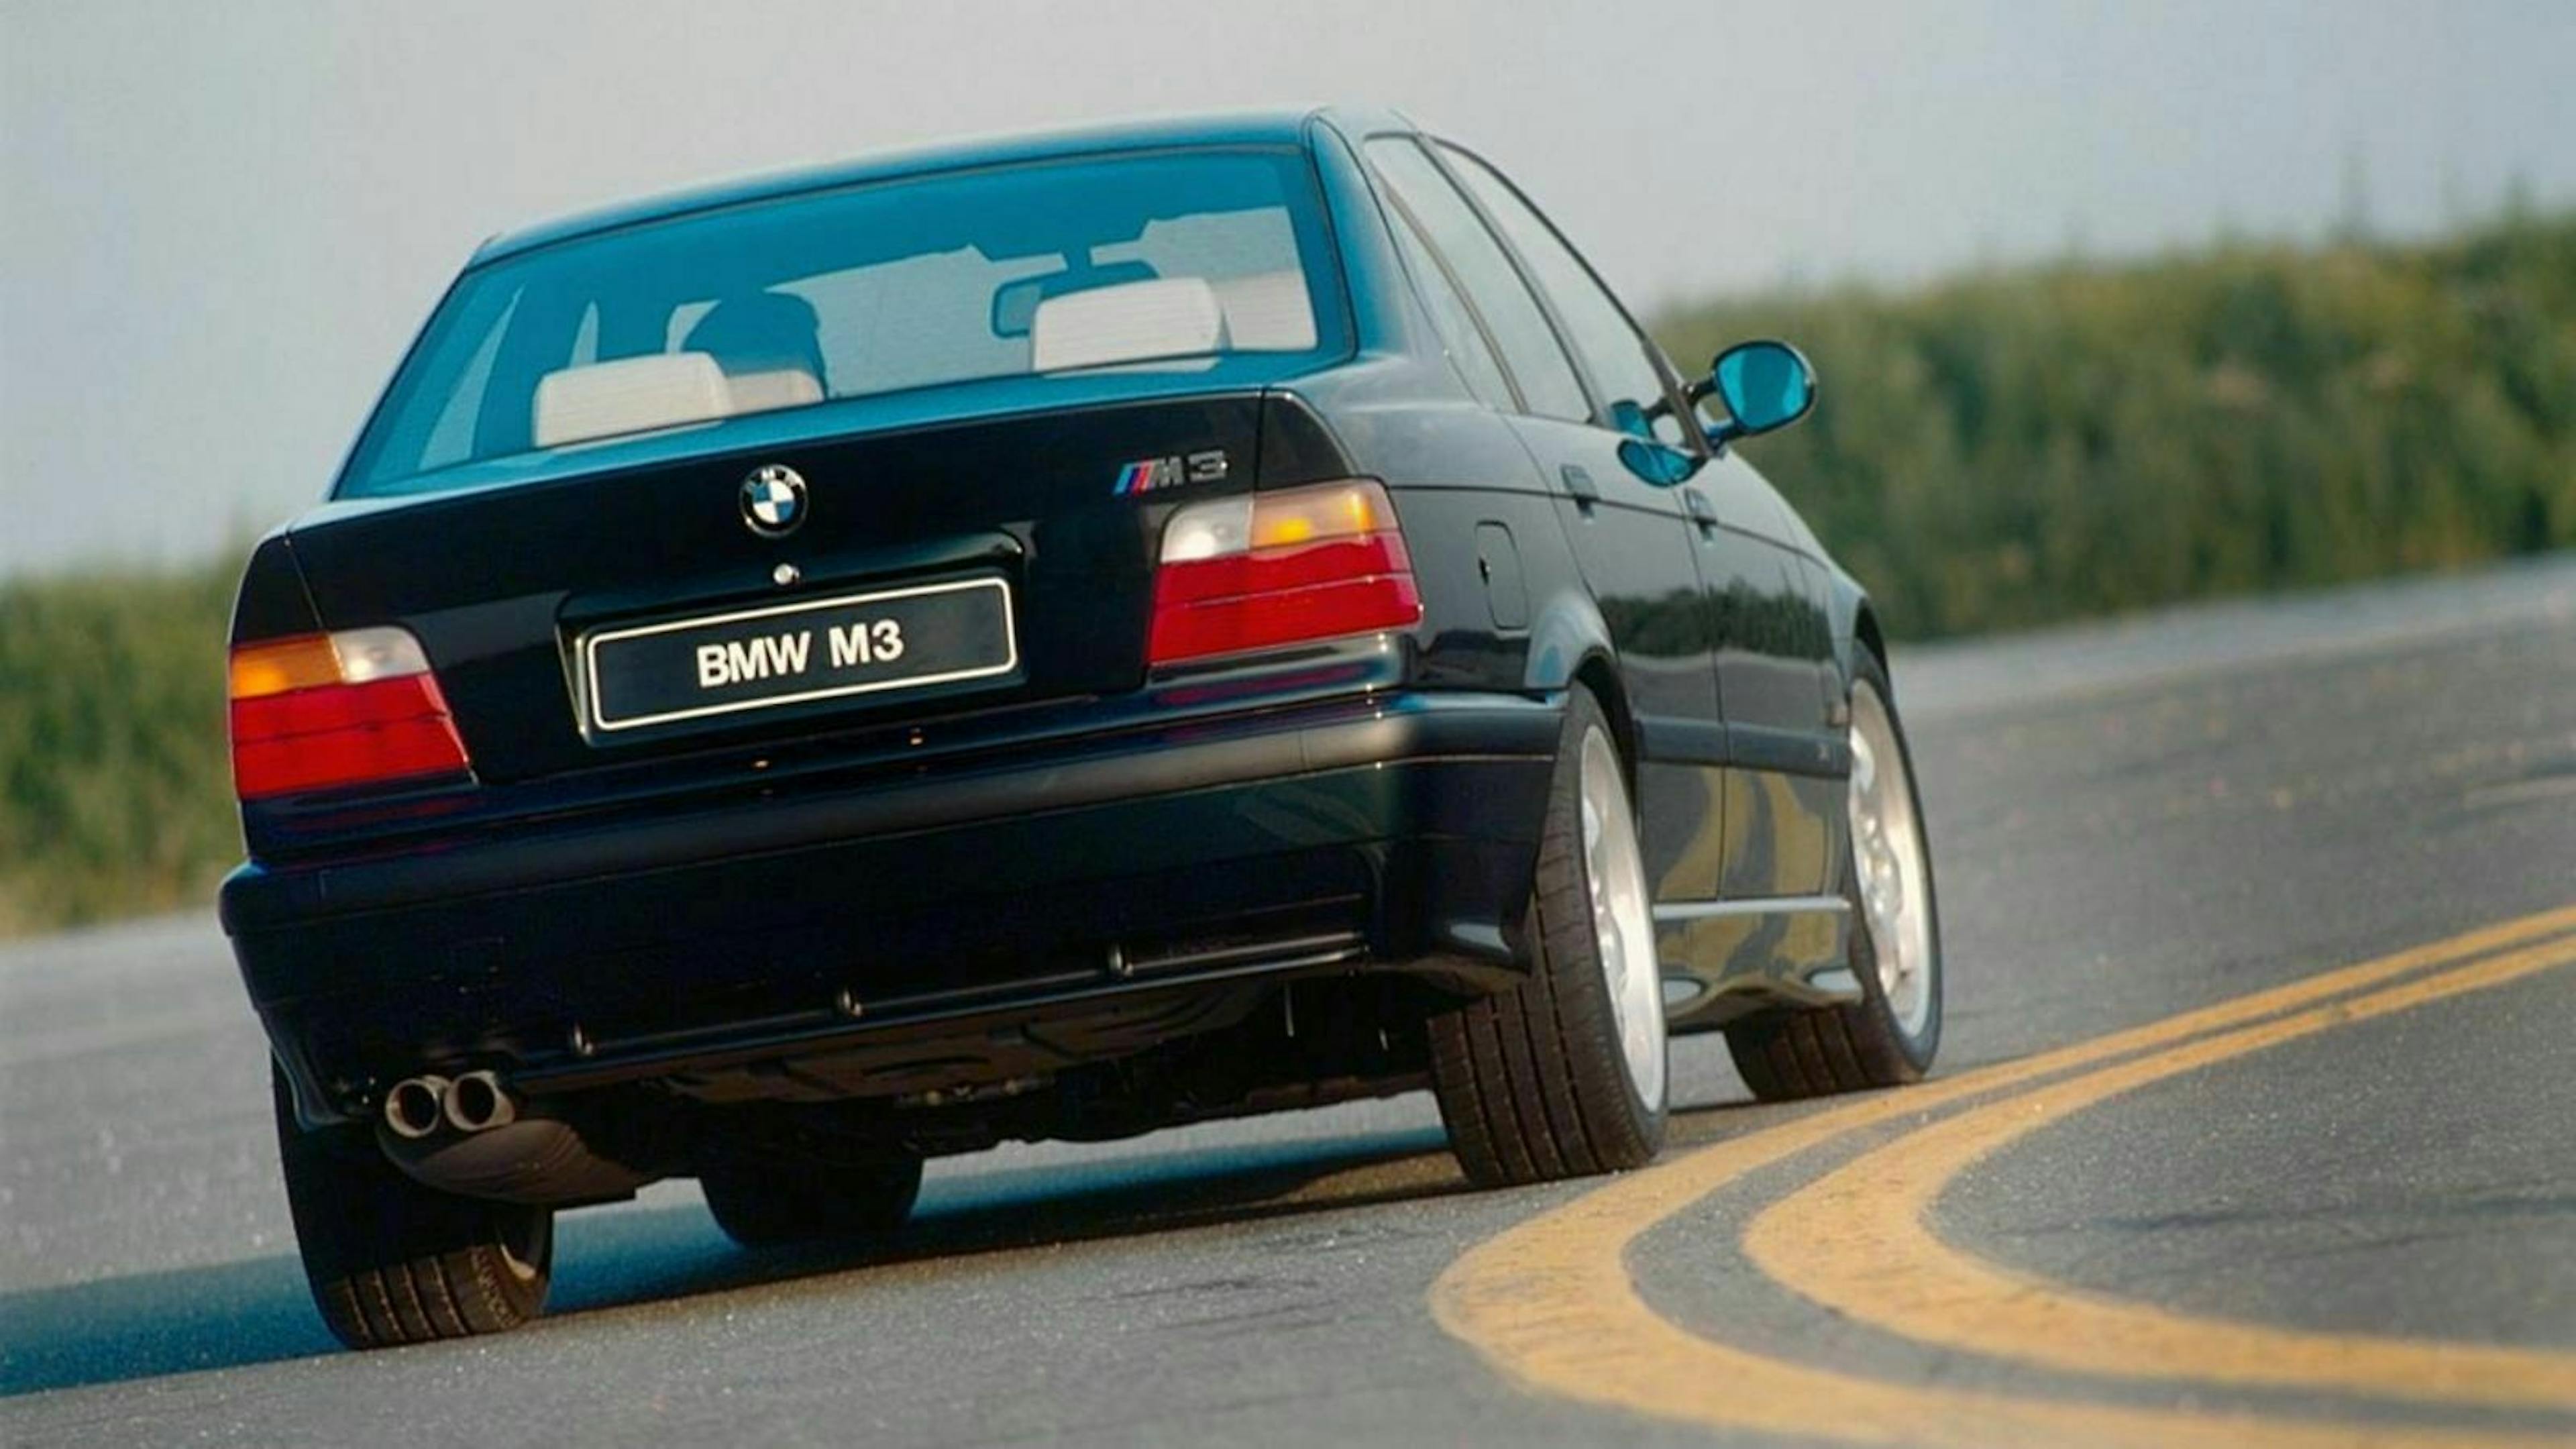 Zu sehen ist der der BMW M3 E36 als Limousine, von hinten